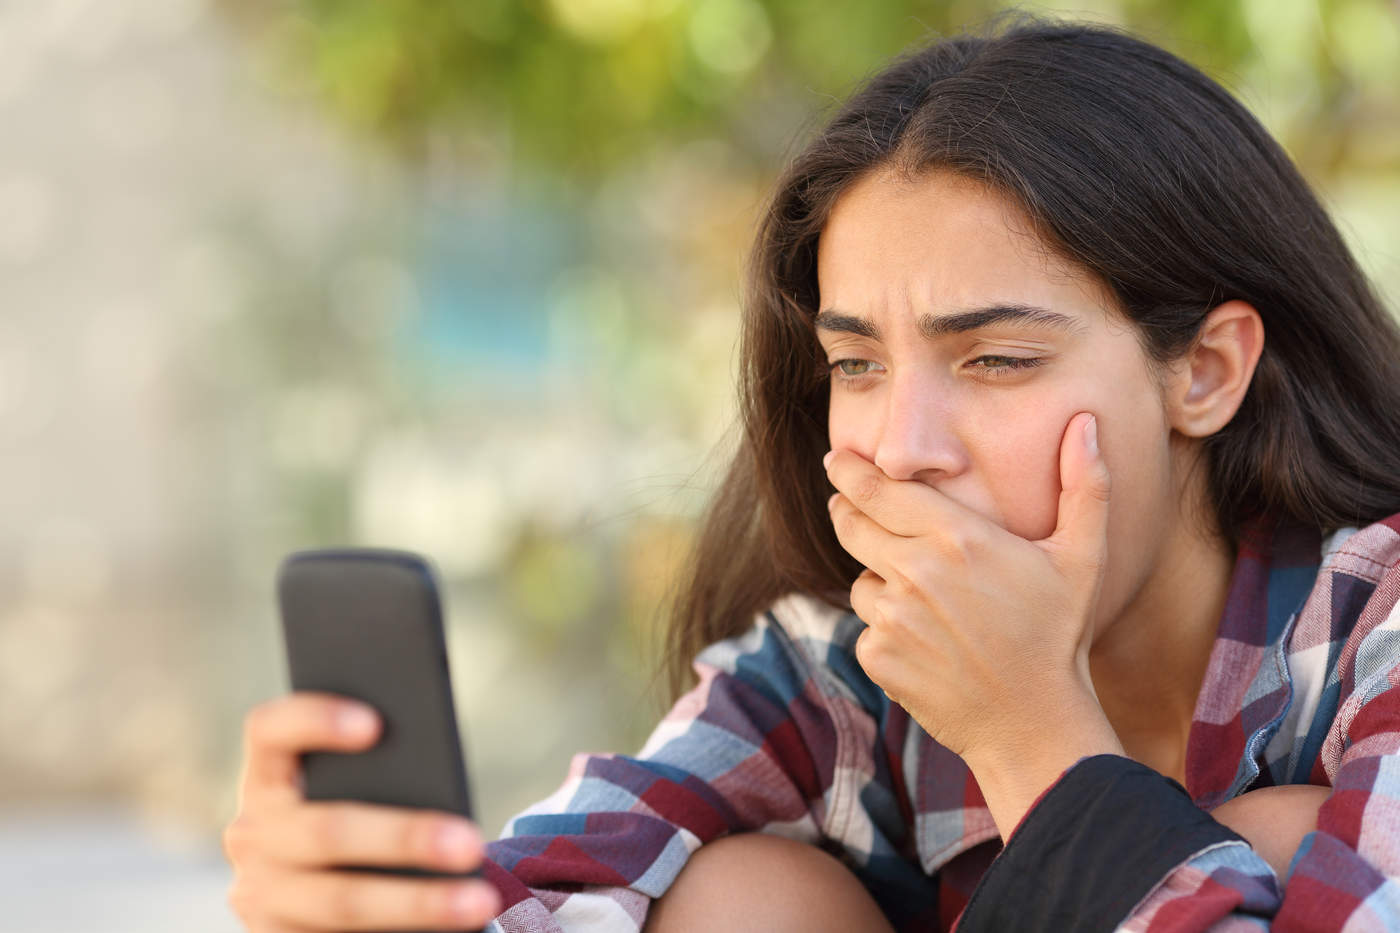 Jóvenes adictos al celular sufren más depresión, revela estudio